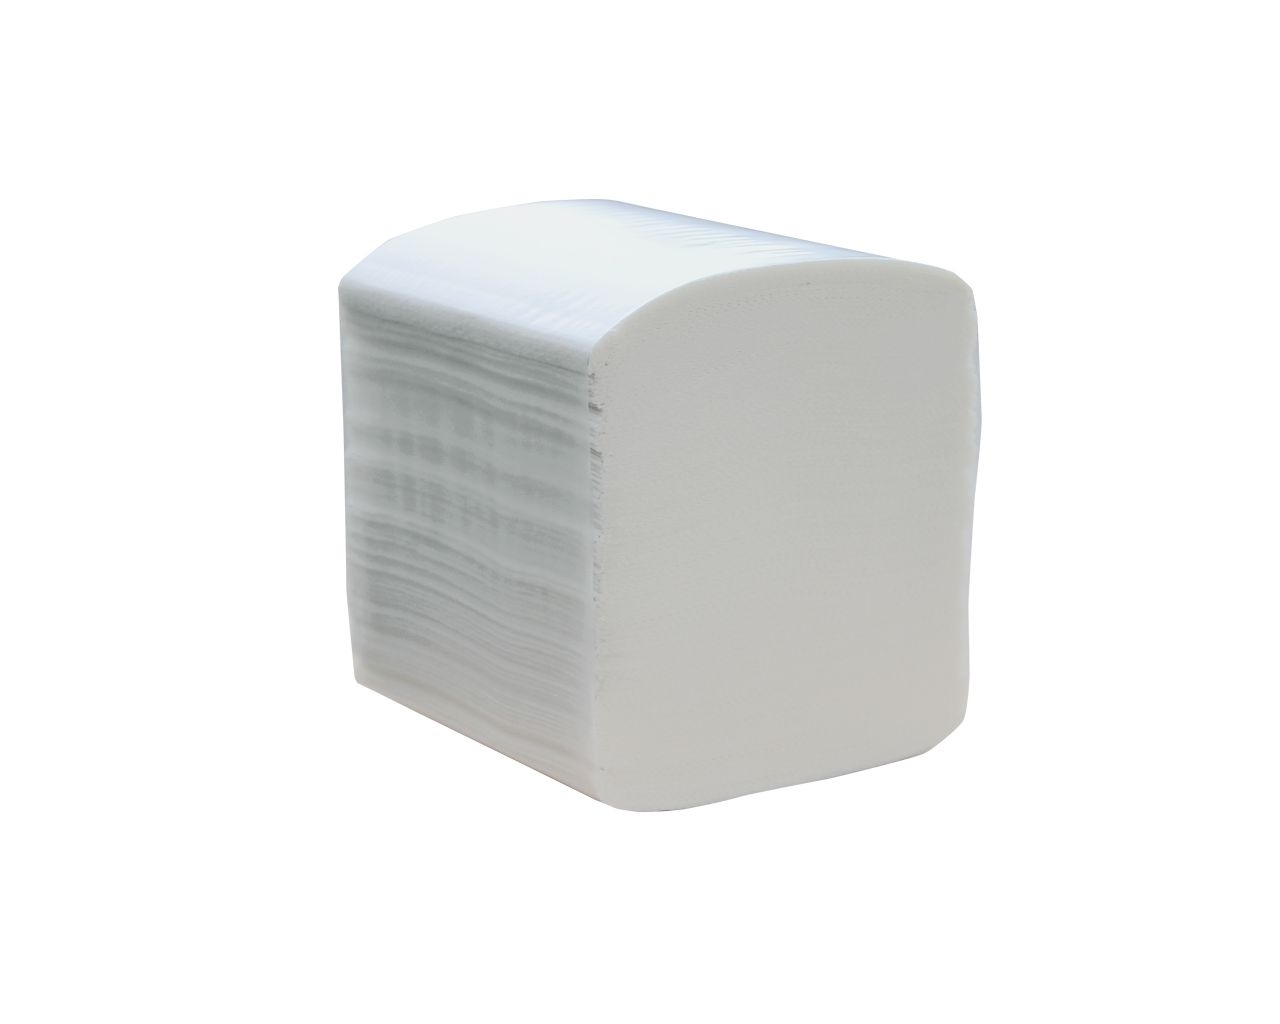 Papier toaletowy w listkach MERIDA PREMIUM, biały, celulozowy, trzywarstwowy, składany, karton 4800 szt.